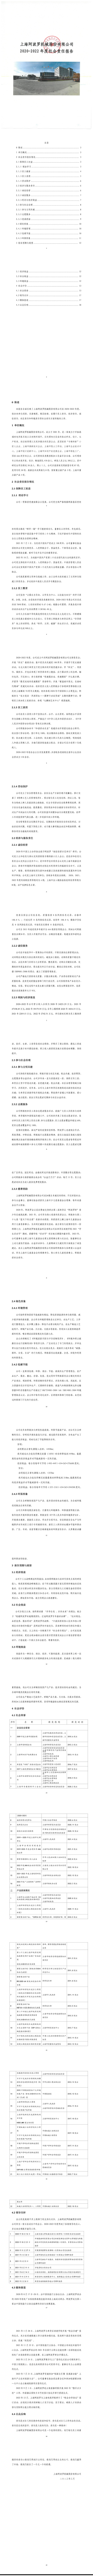 【PG电子
新闻】PG电子(中国)官方网站
2022年社会责任报告